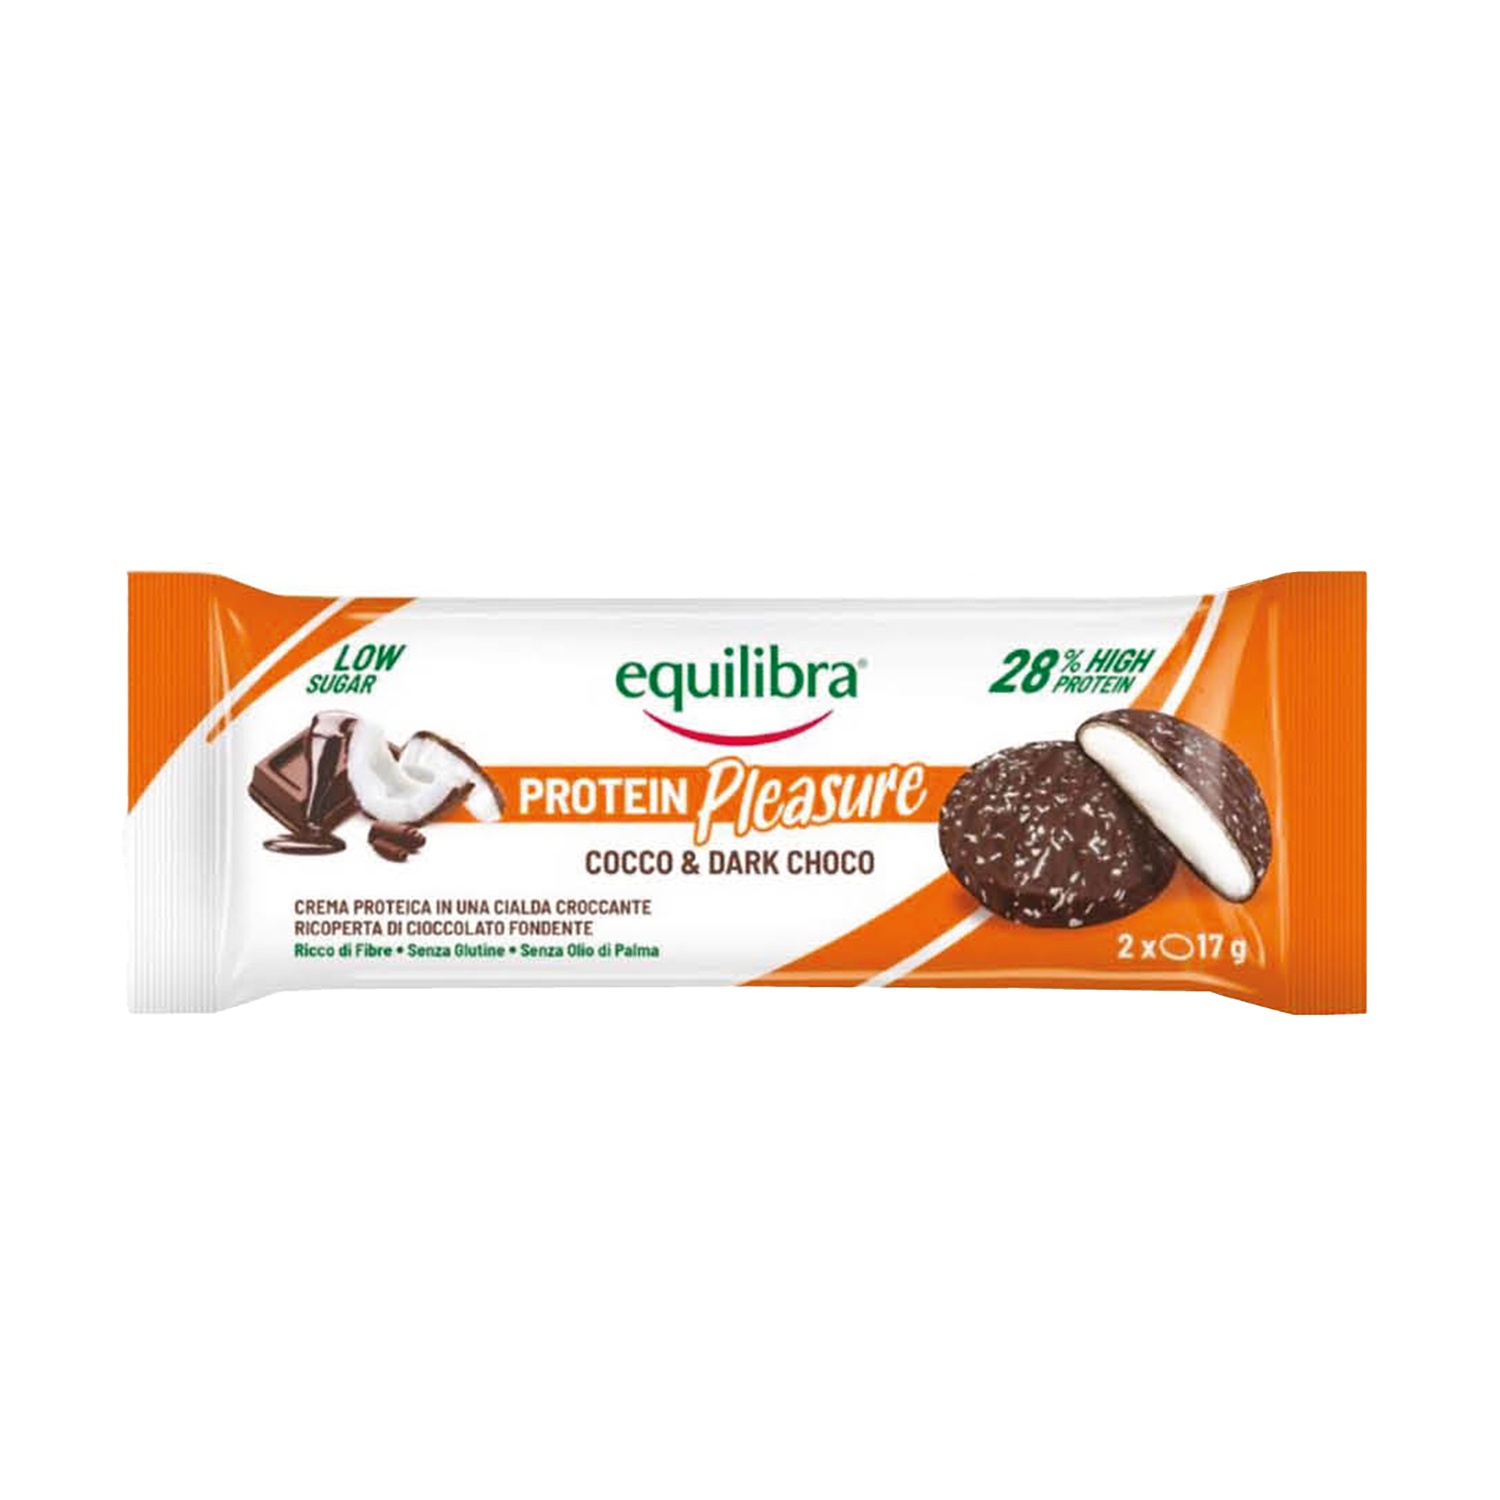 EQUILIBRA Protein Pleasure Biscotti con cocco e cioccolato fondente